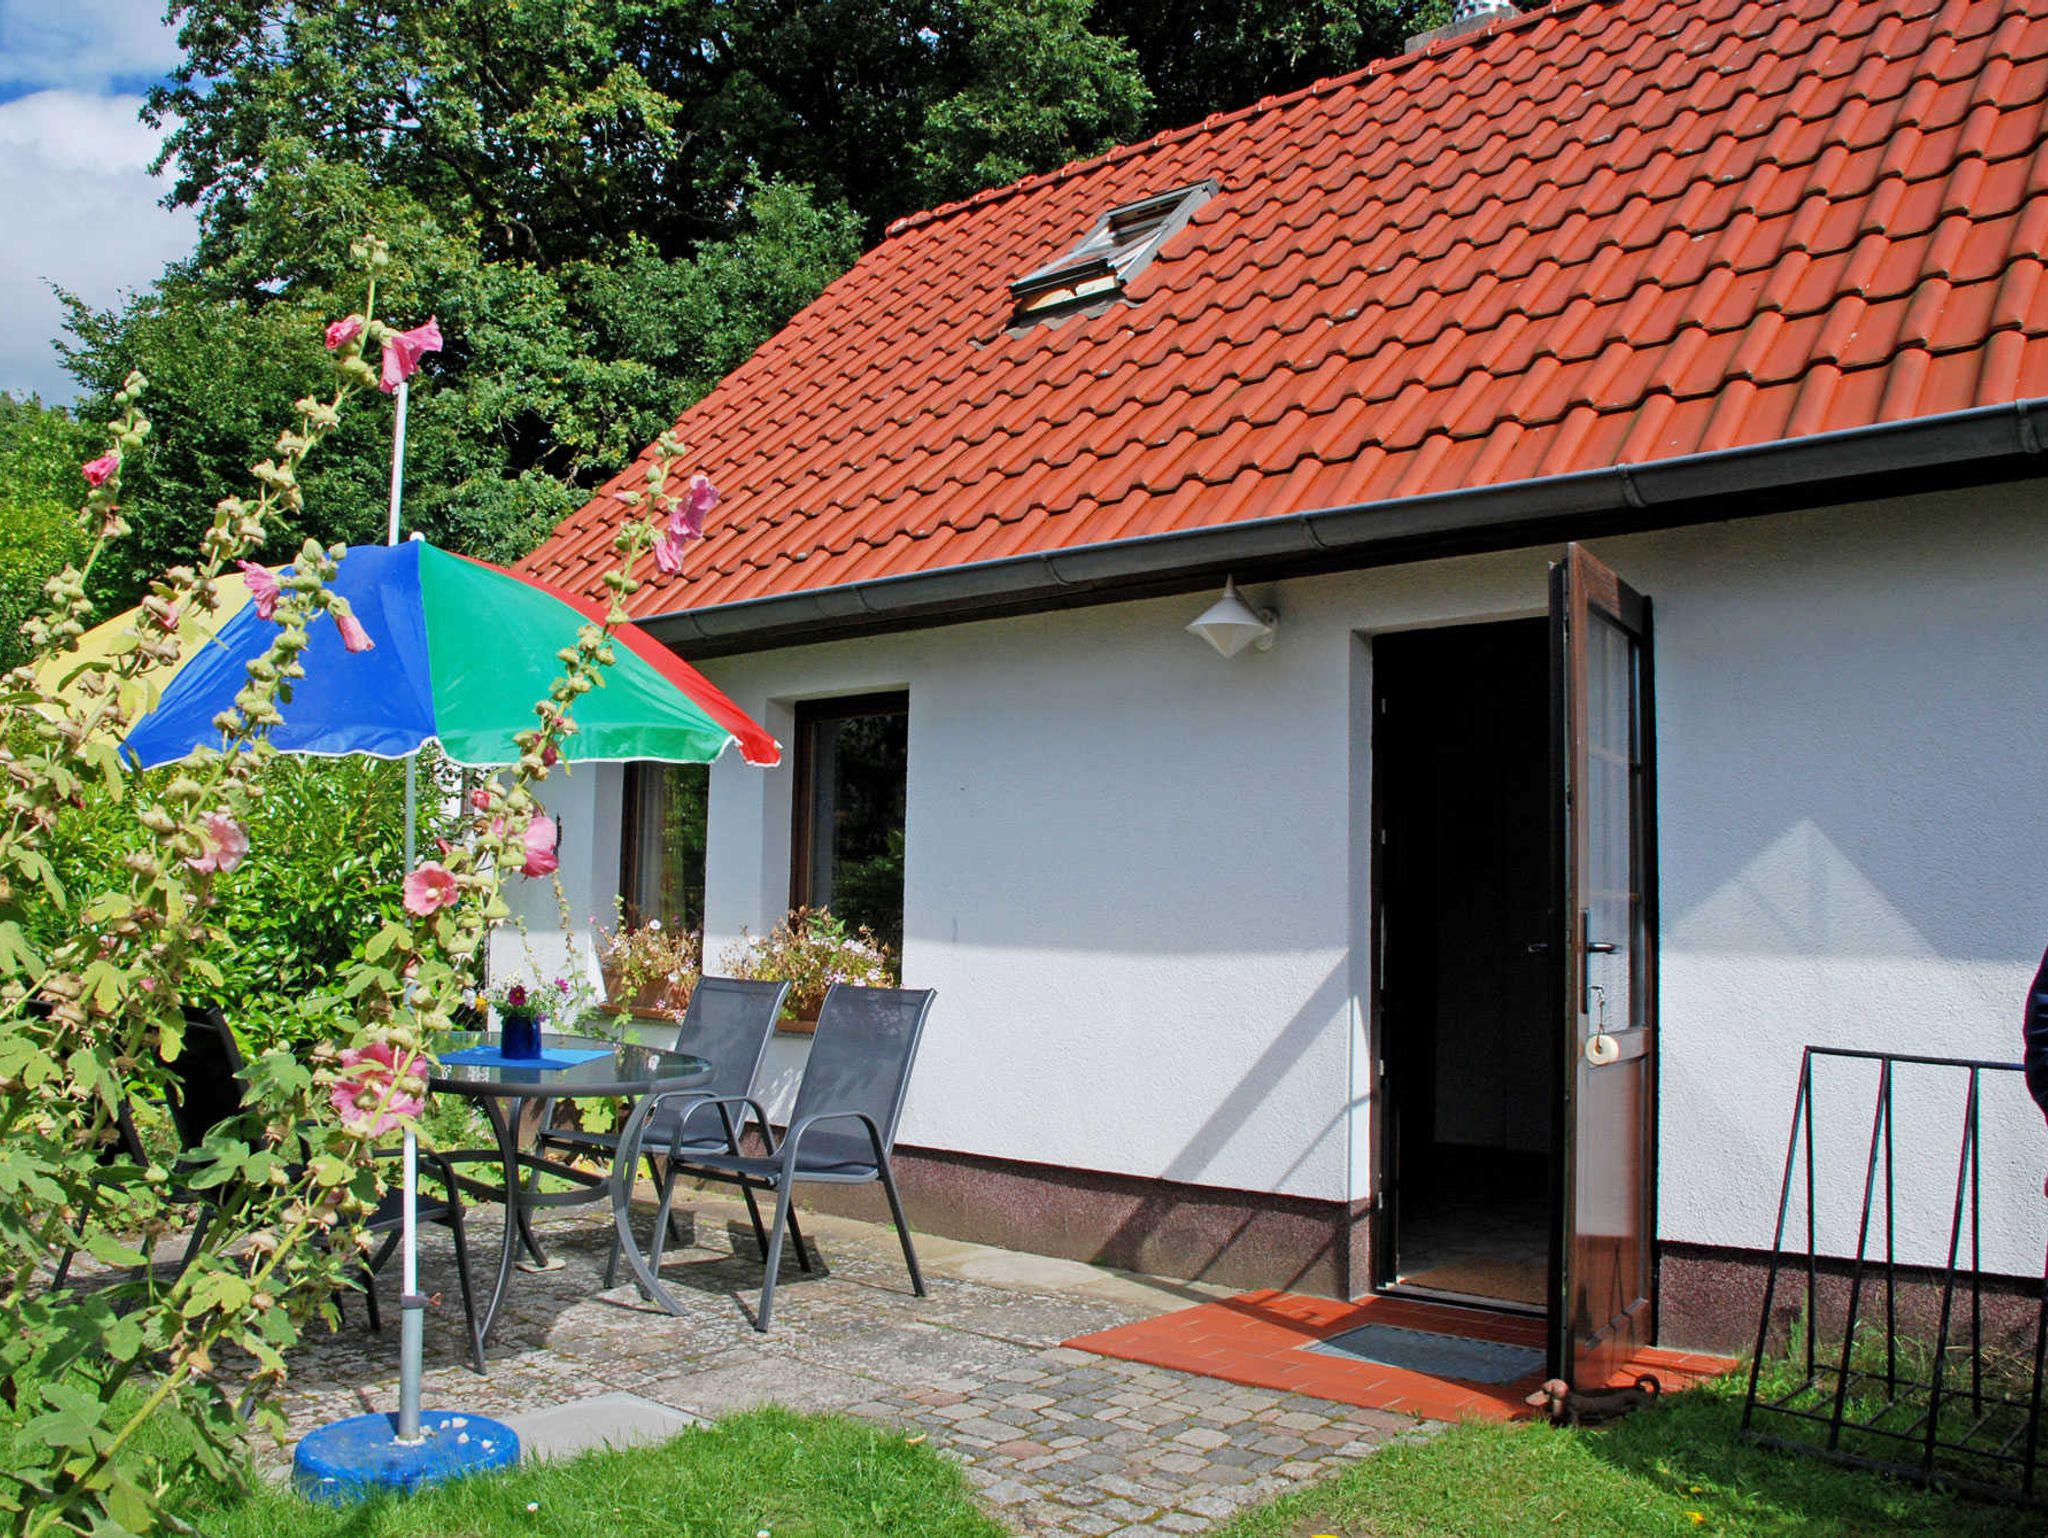 Ferienhaus in Lauterbach mit Kachelofen